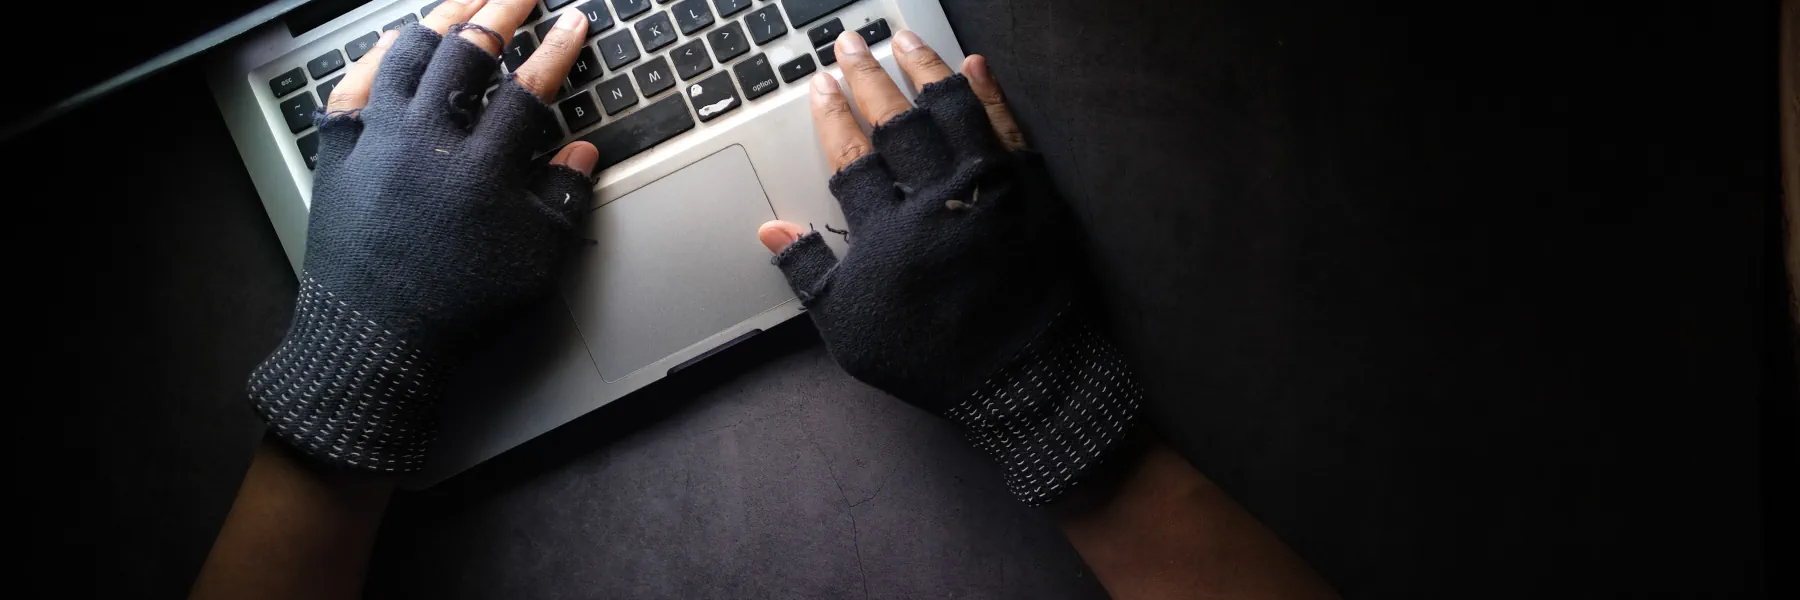 Hacker mit Handschuhen auf einer Notebooktastatur